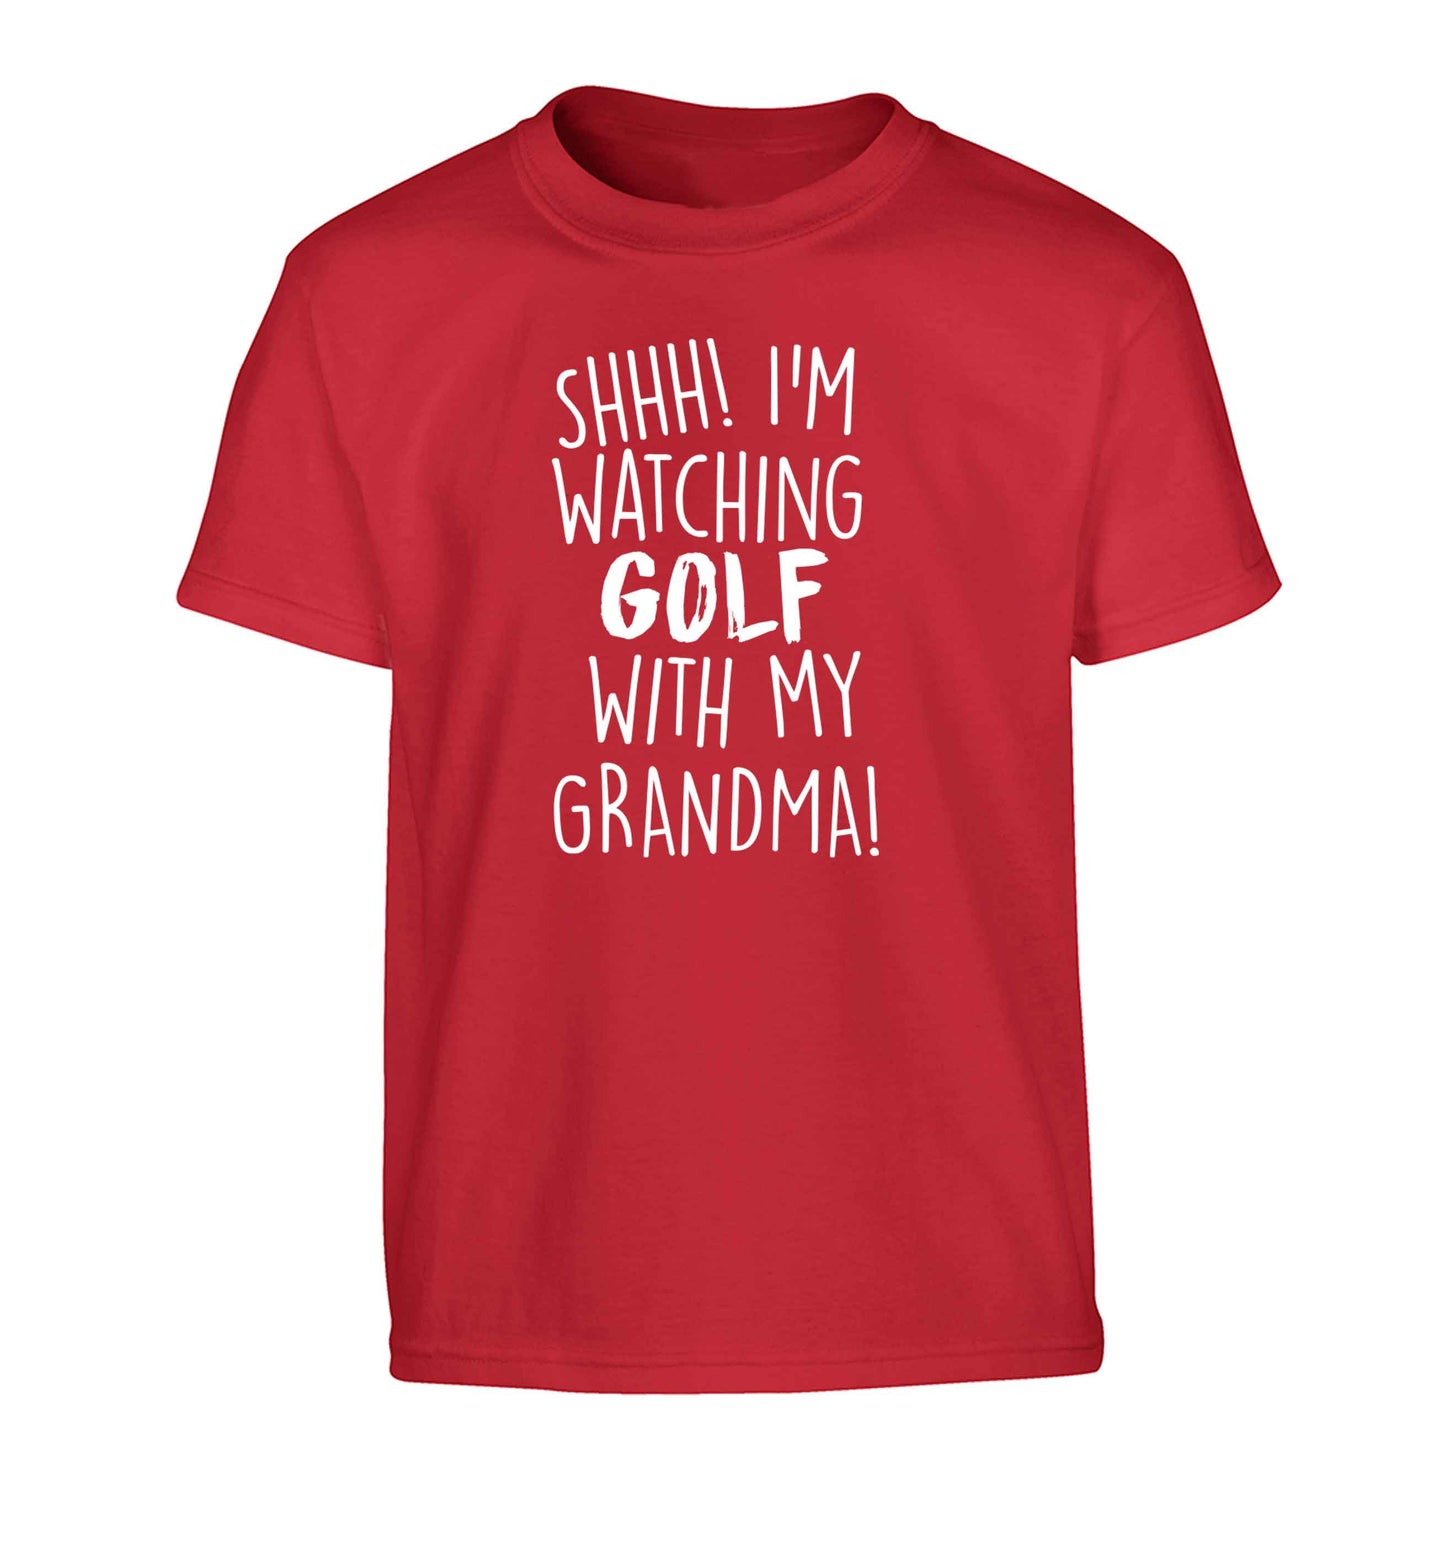 Shh I'm watching golf with my grandma Children's red Tshirt 12-13 Years